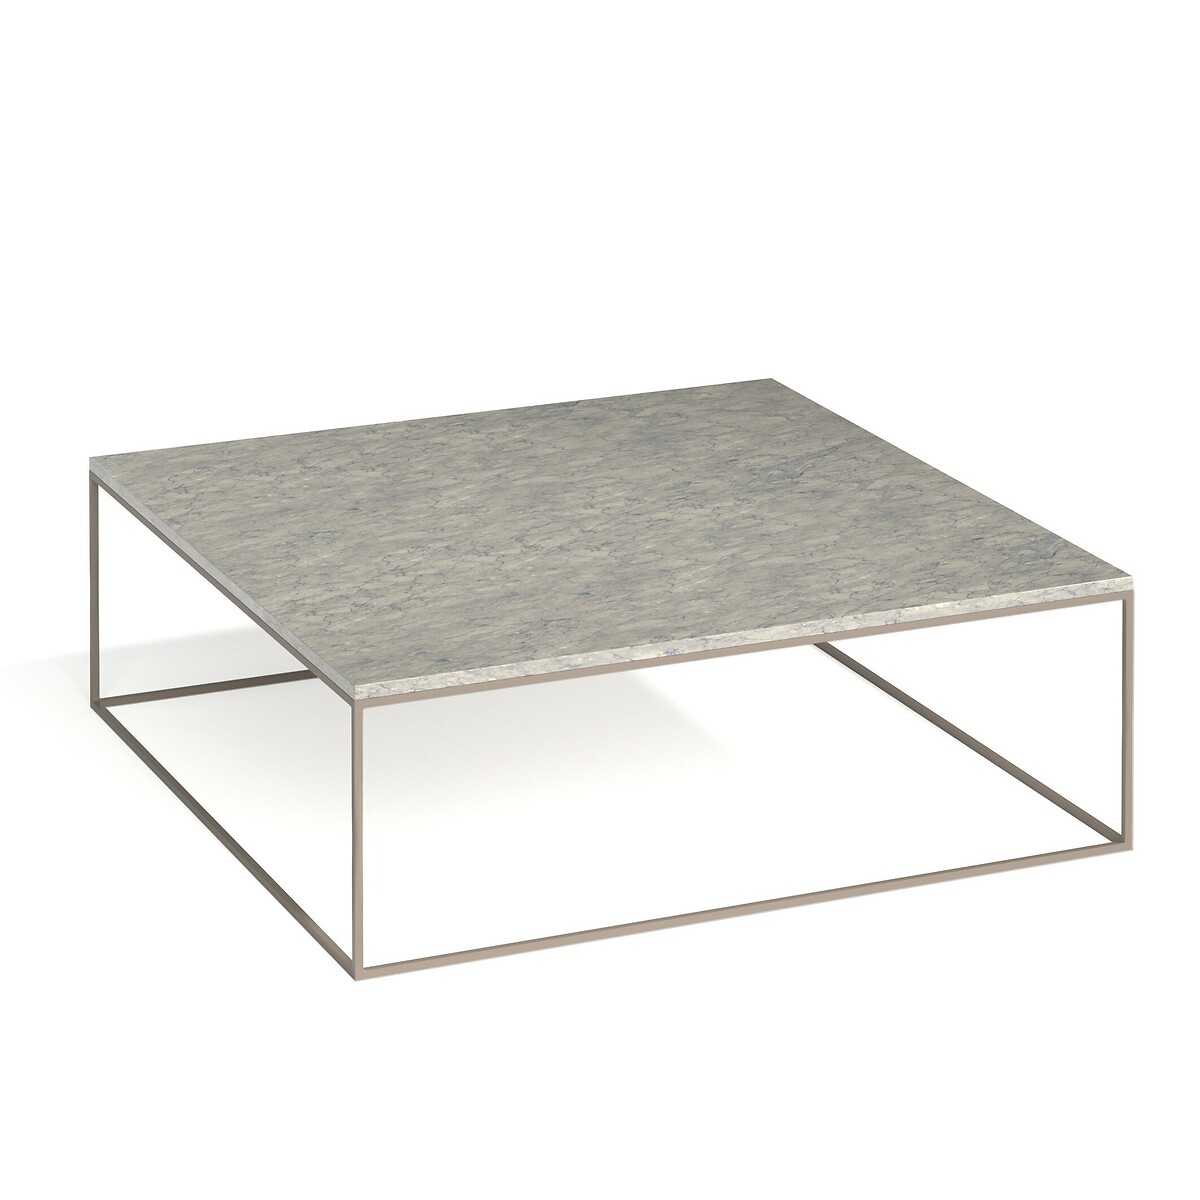 Стол LaRedoute Стол Журнальный из металла и серого мрамора Mahaut единый размер серый